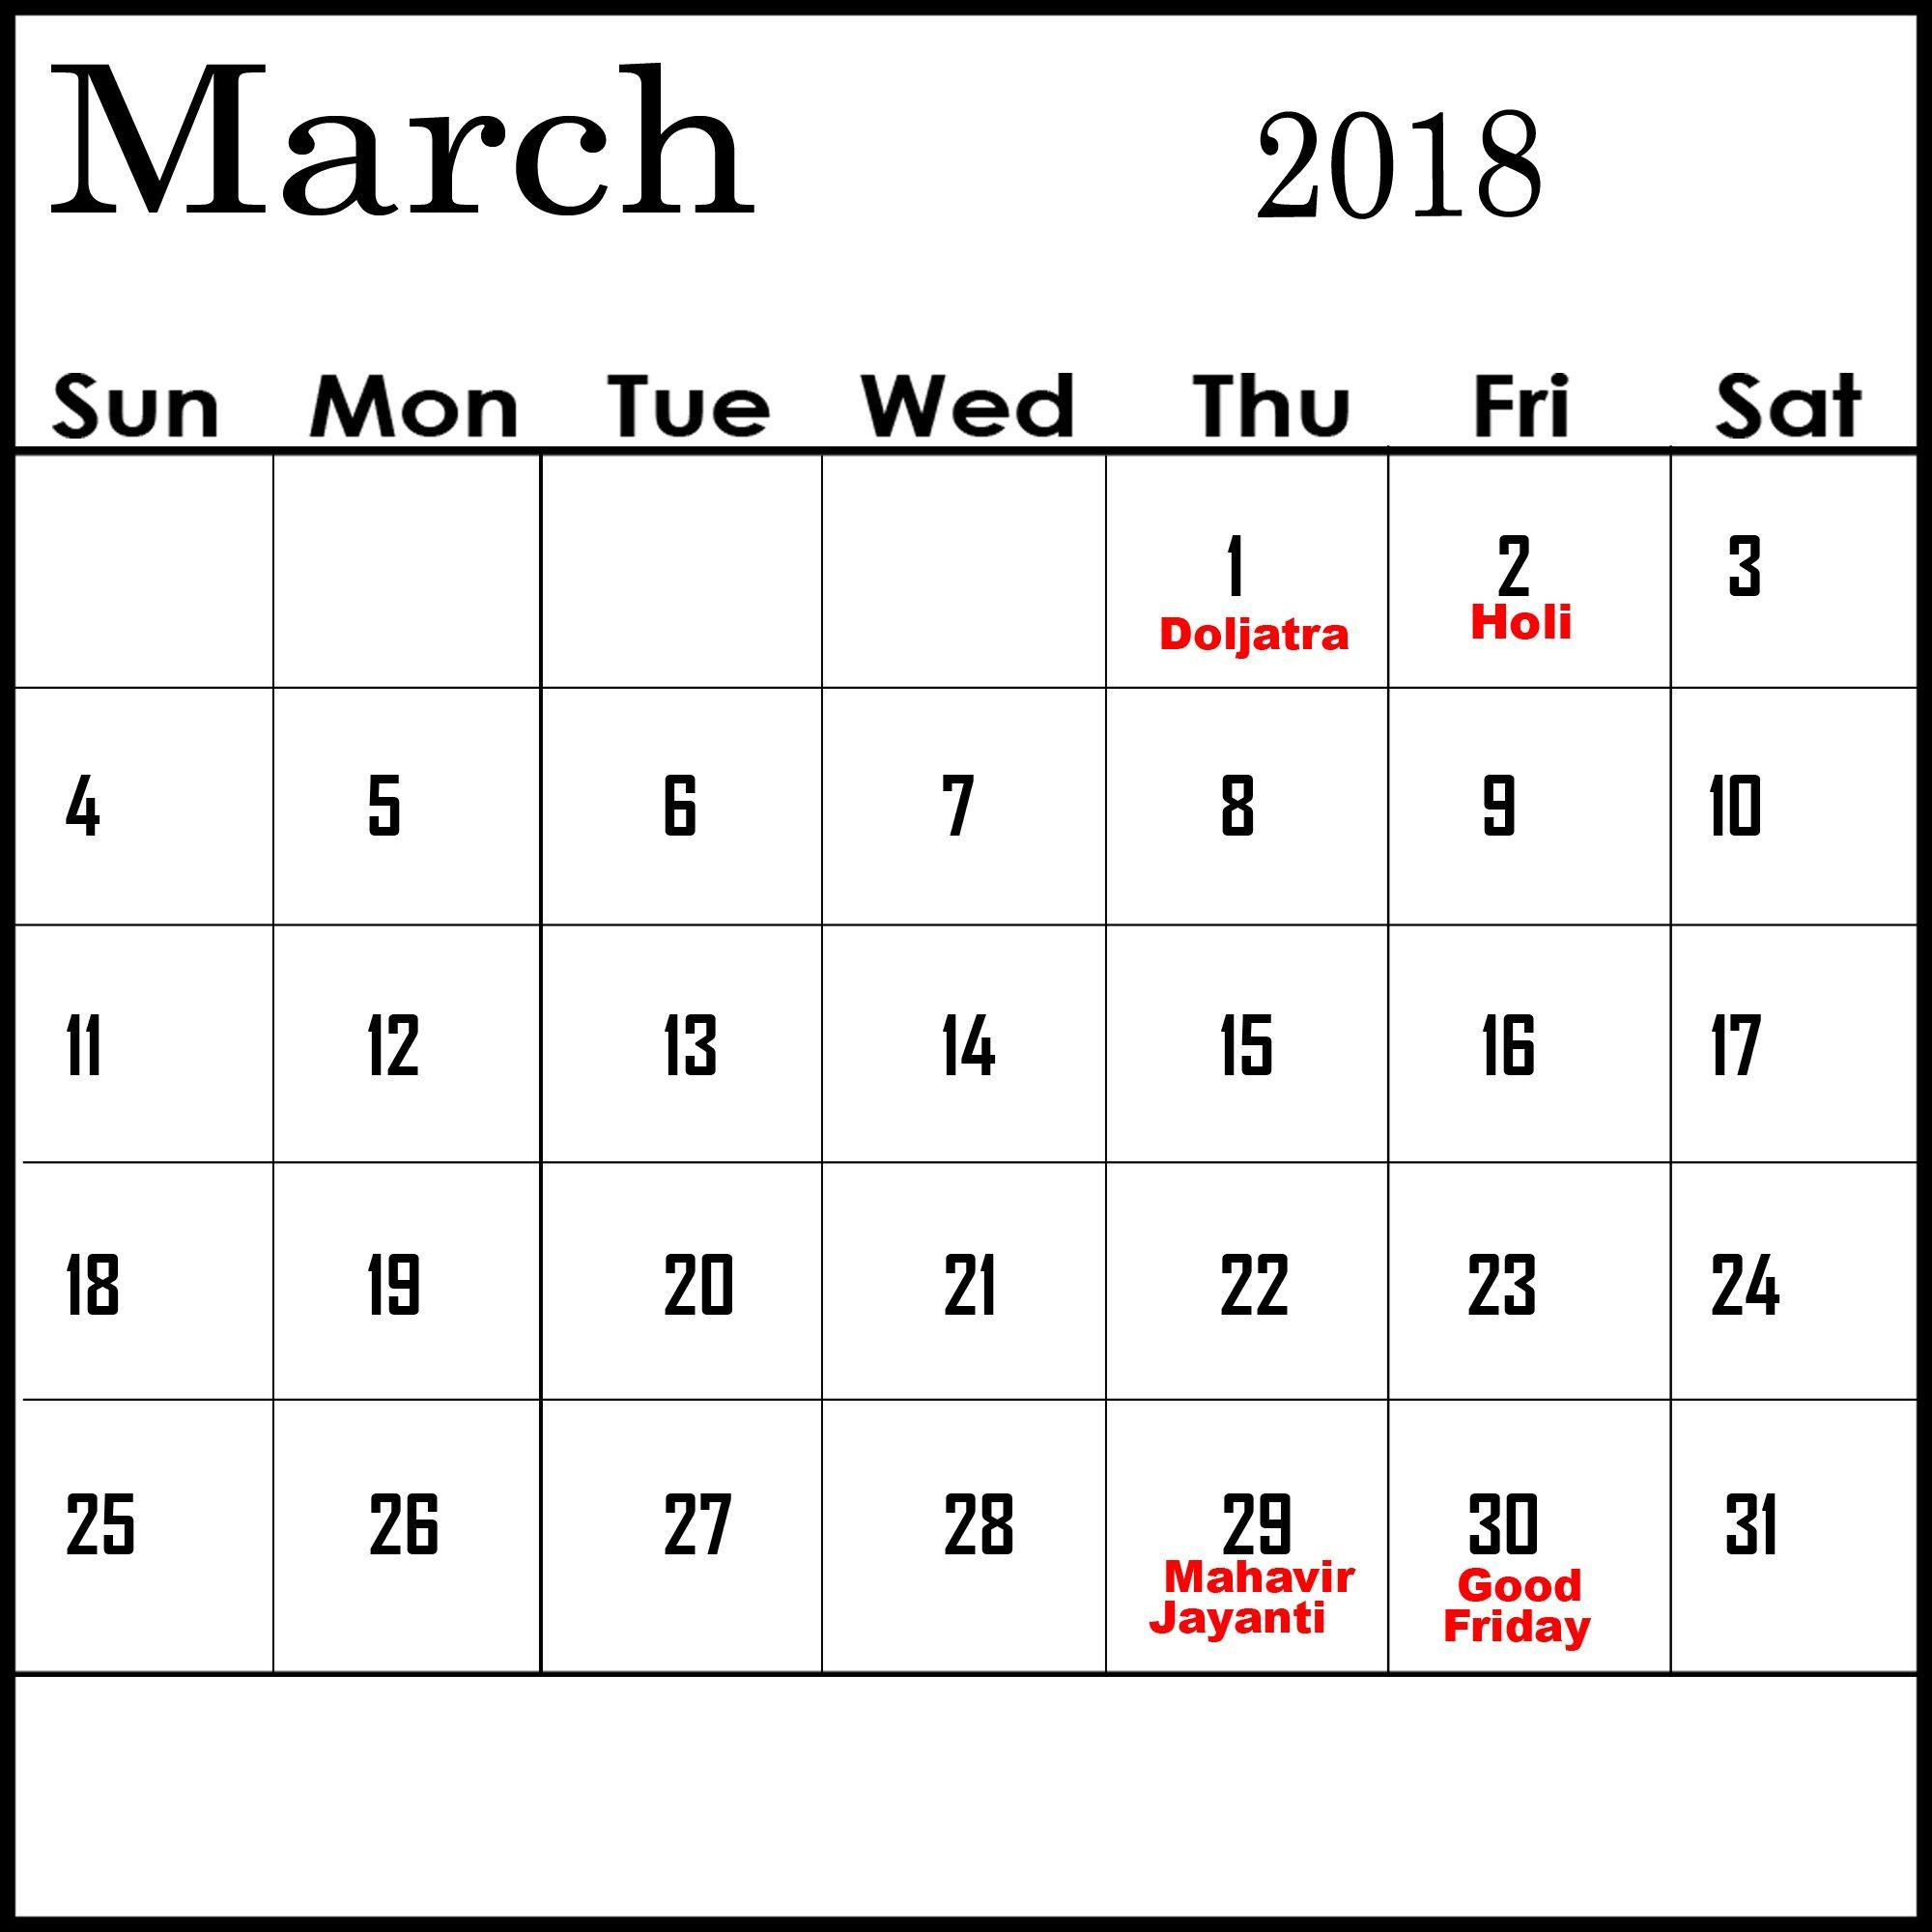 february-2019-calendar-printable-with-holidays-whatisthedatetoday-com